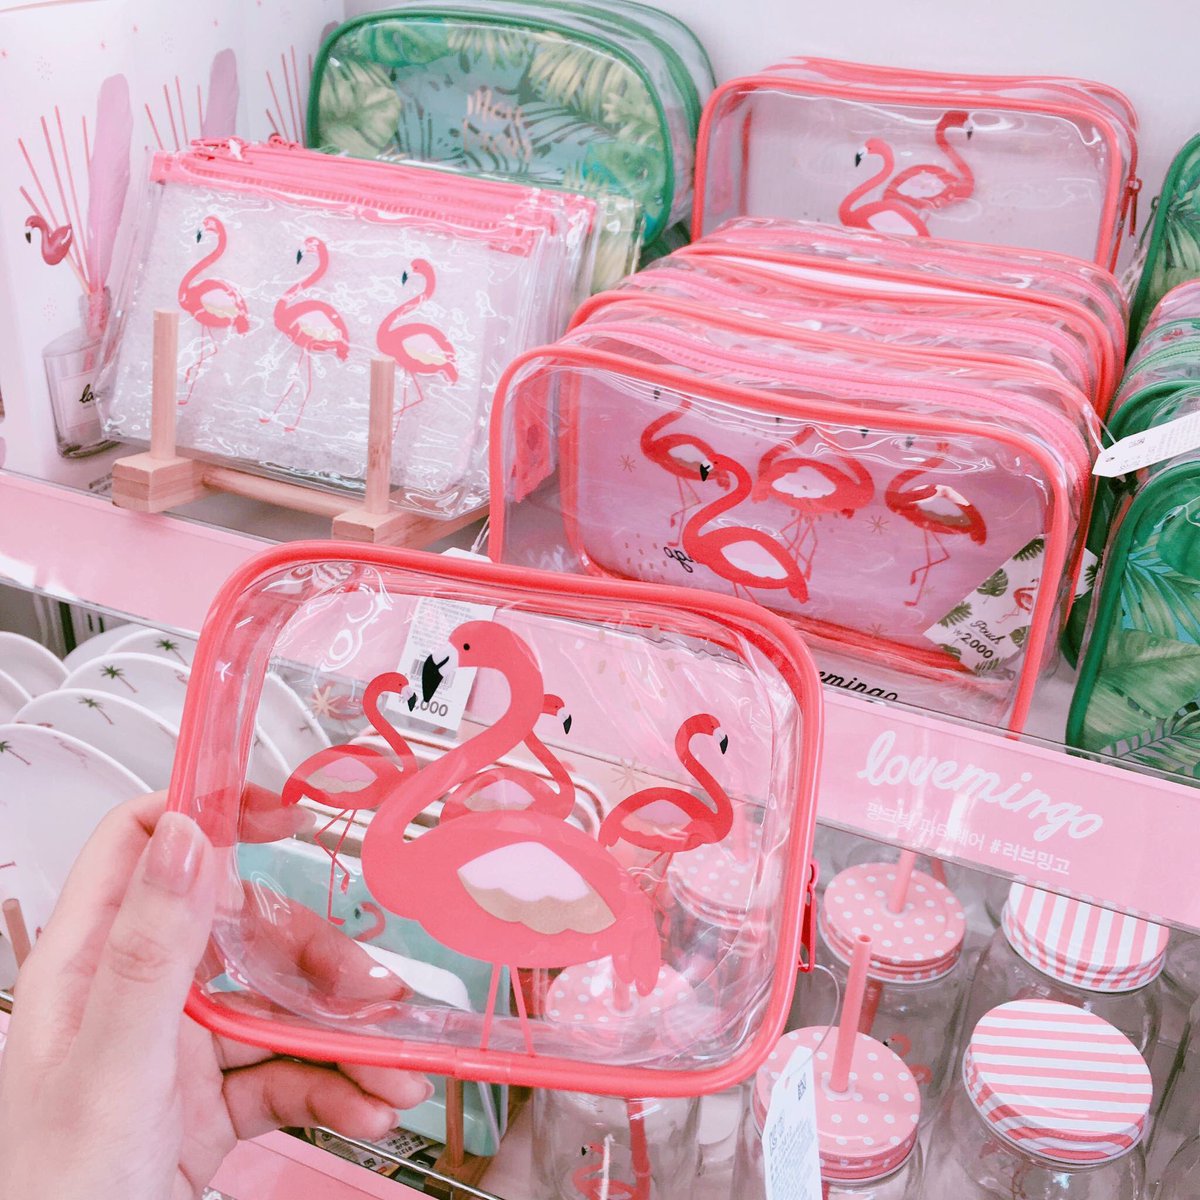 韓国 Info A Twitteren 韓国のダイソーでフラミンゴシリーズが発売 ピンクのビニールポーチとピンクのタッセルの組み合わせが最高に 可愛い 韓国に行ったら絶対ゲットしたい